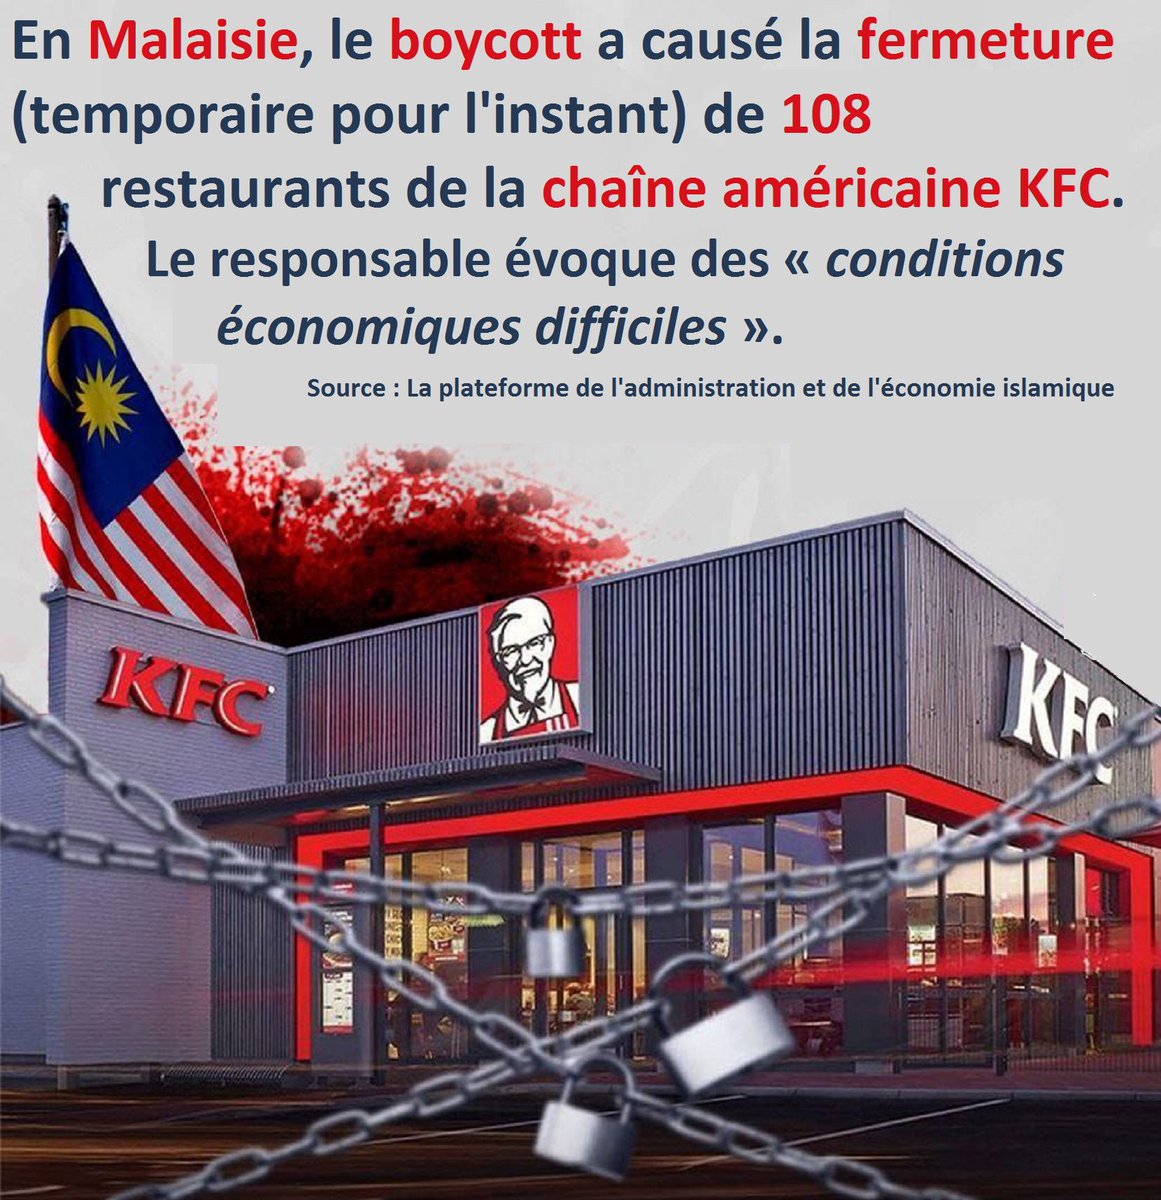 En Malaisie, le #boycott a causé la fermeture (temporaire pour l'instant) de 108 restaurants de la chaîne américaine KFC.
Le responsable évoque des « conditions économiques difficiles ».

Source : La plateforme de l'administration et de l'économie islamique